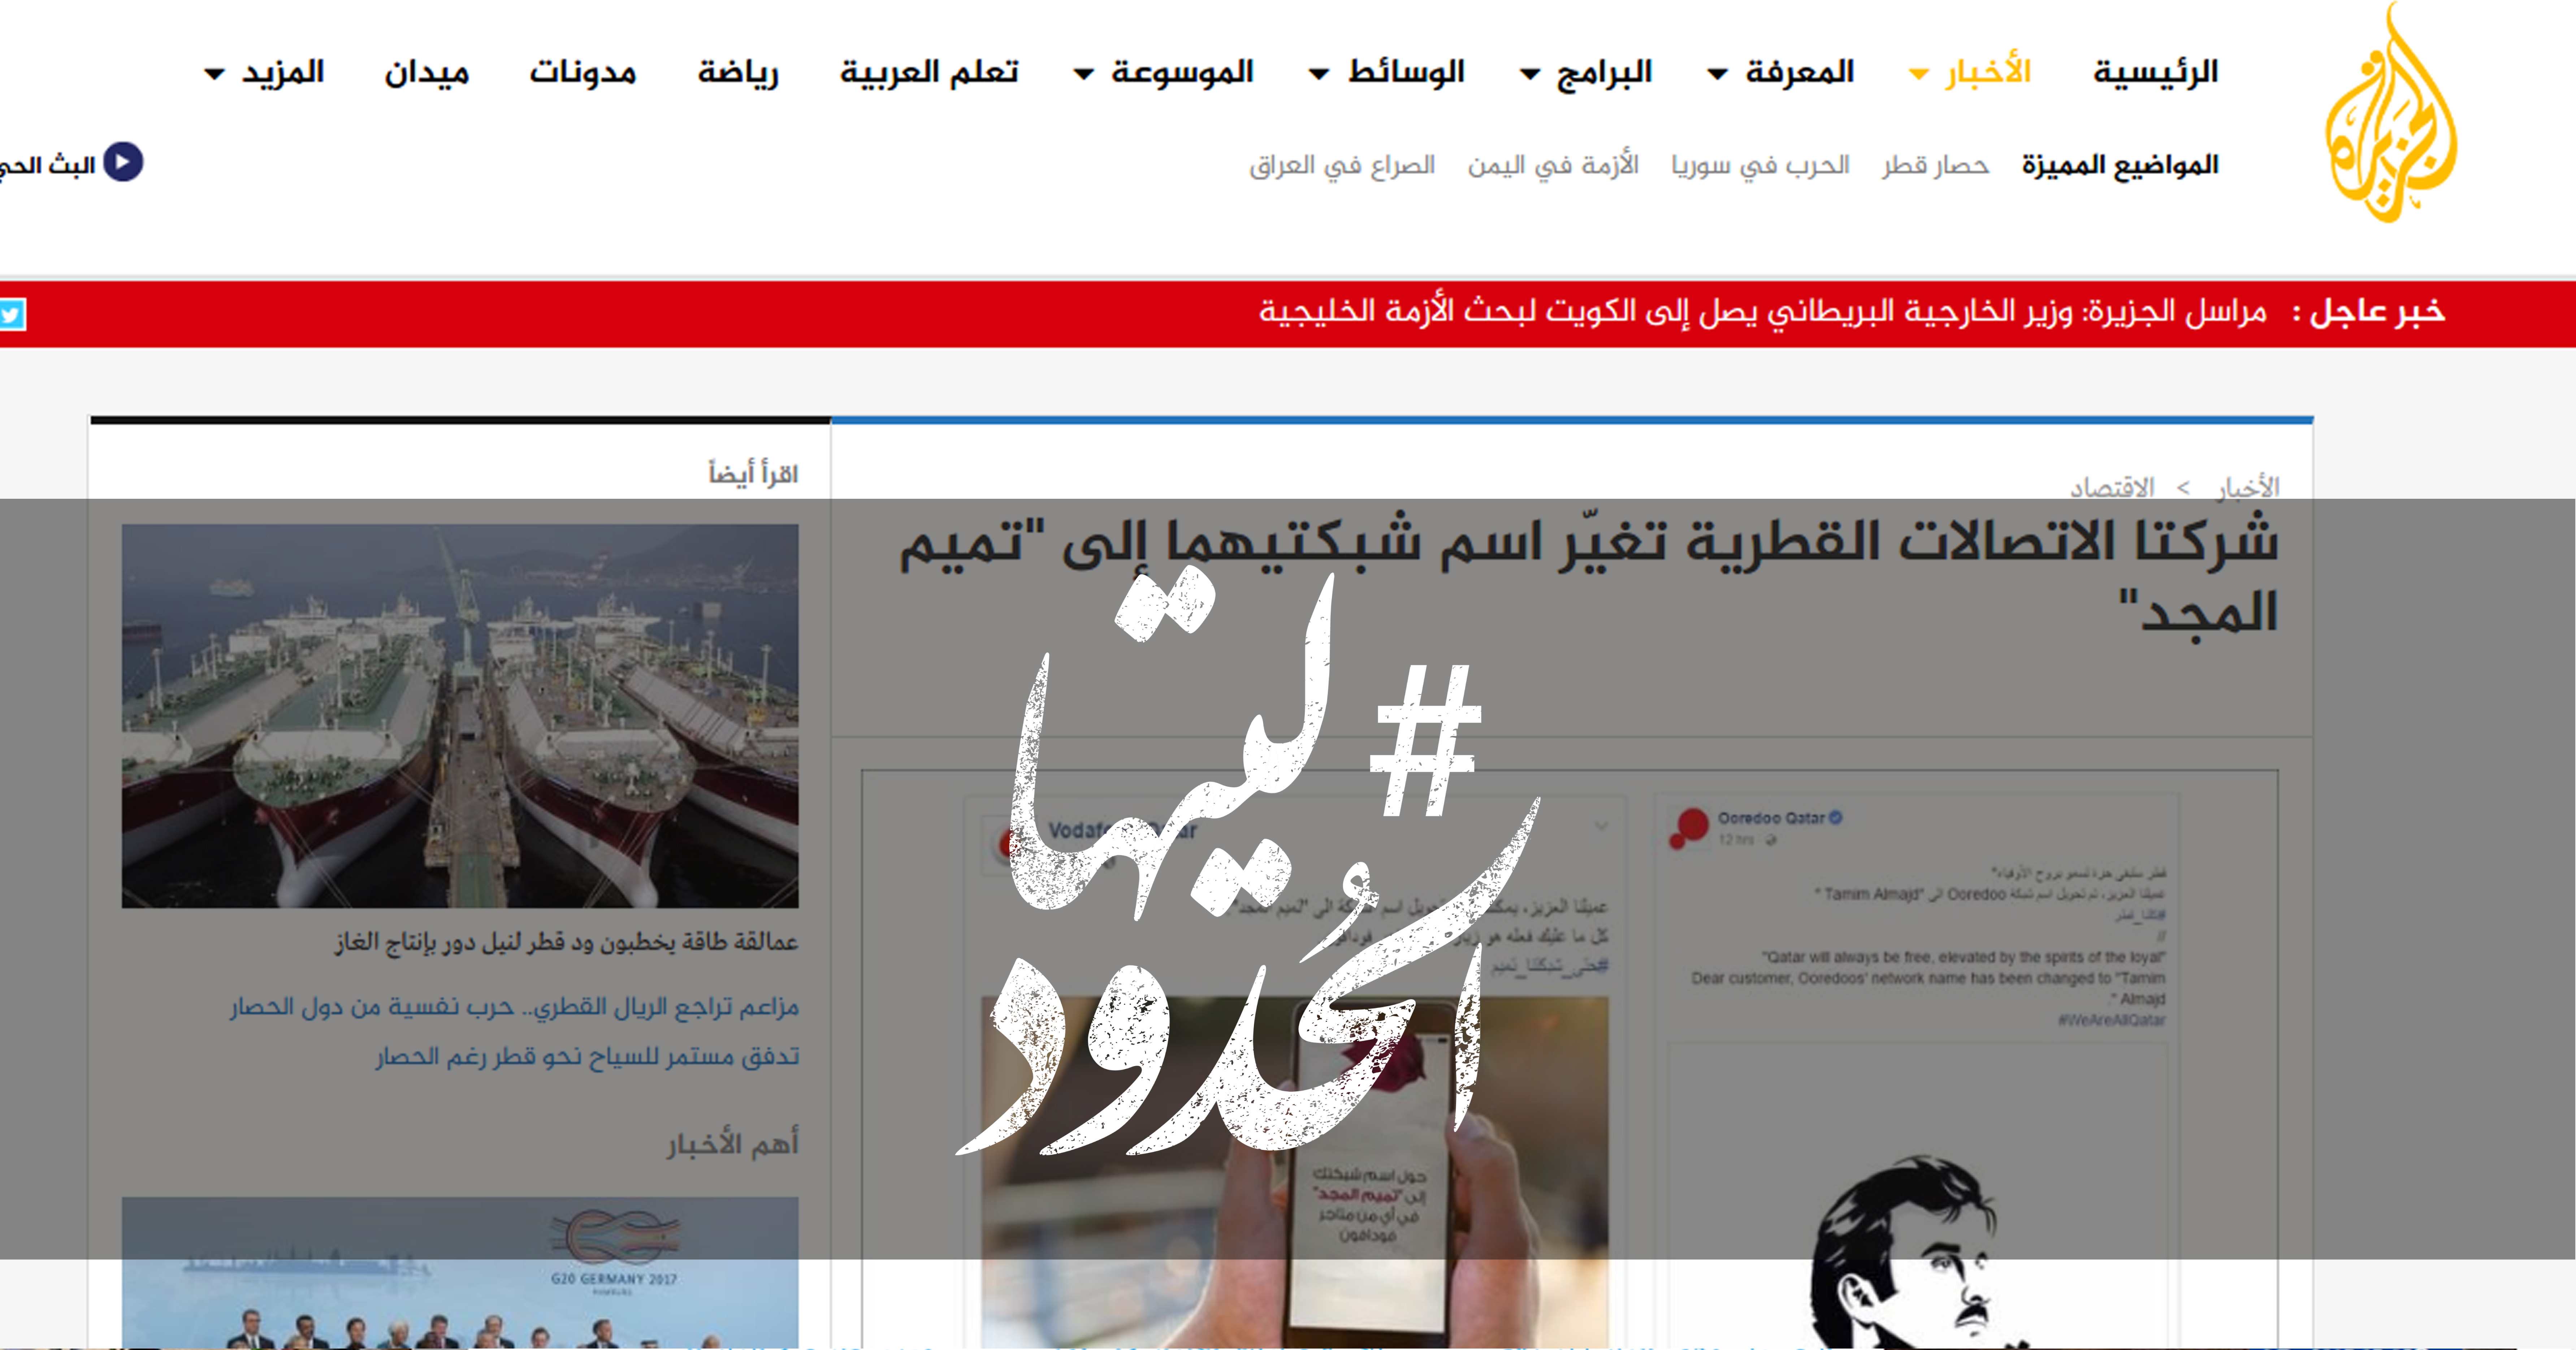 صورة شركتا الاتصالات القطرية تغيّر اسم شبكتيهما إلى “تميم المجد”